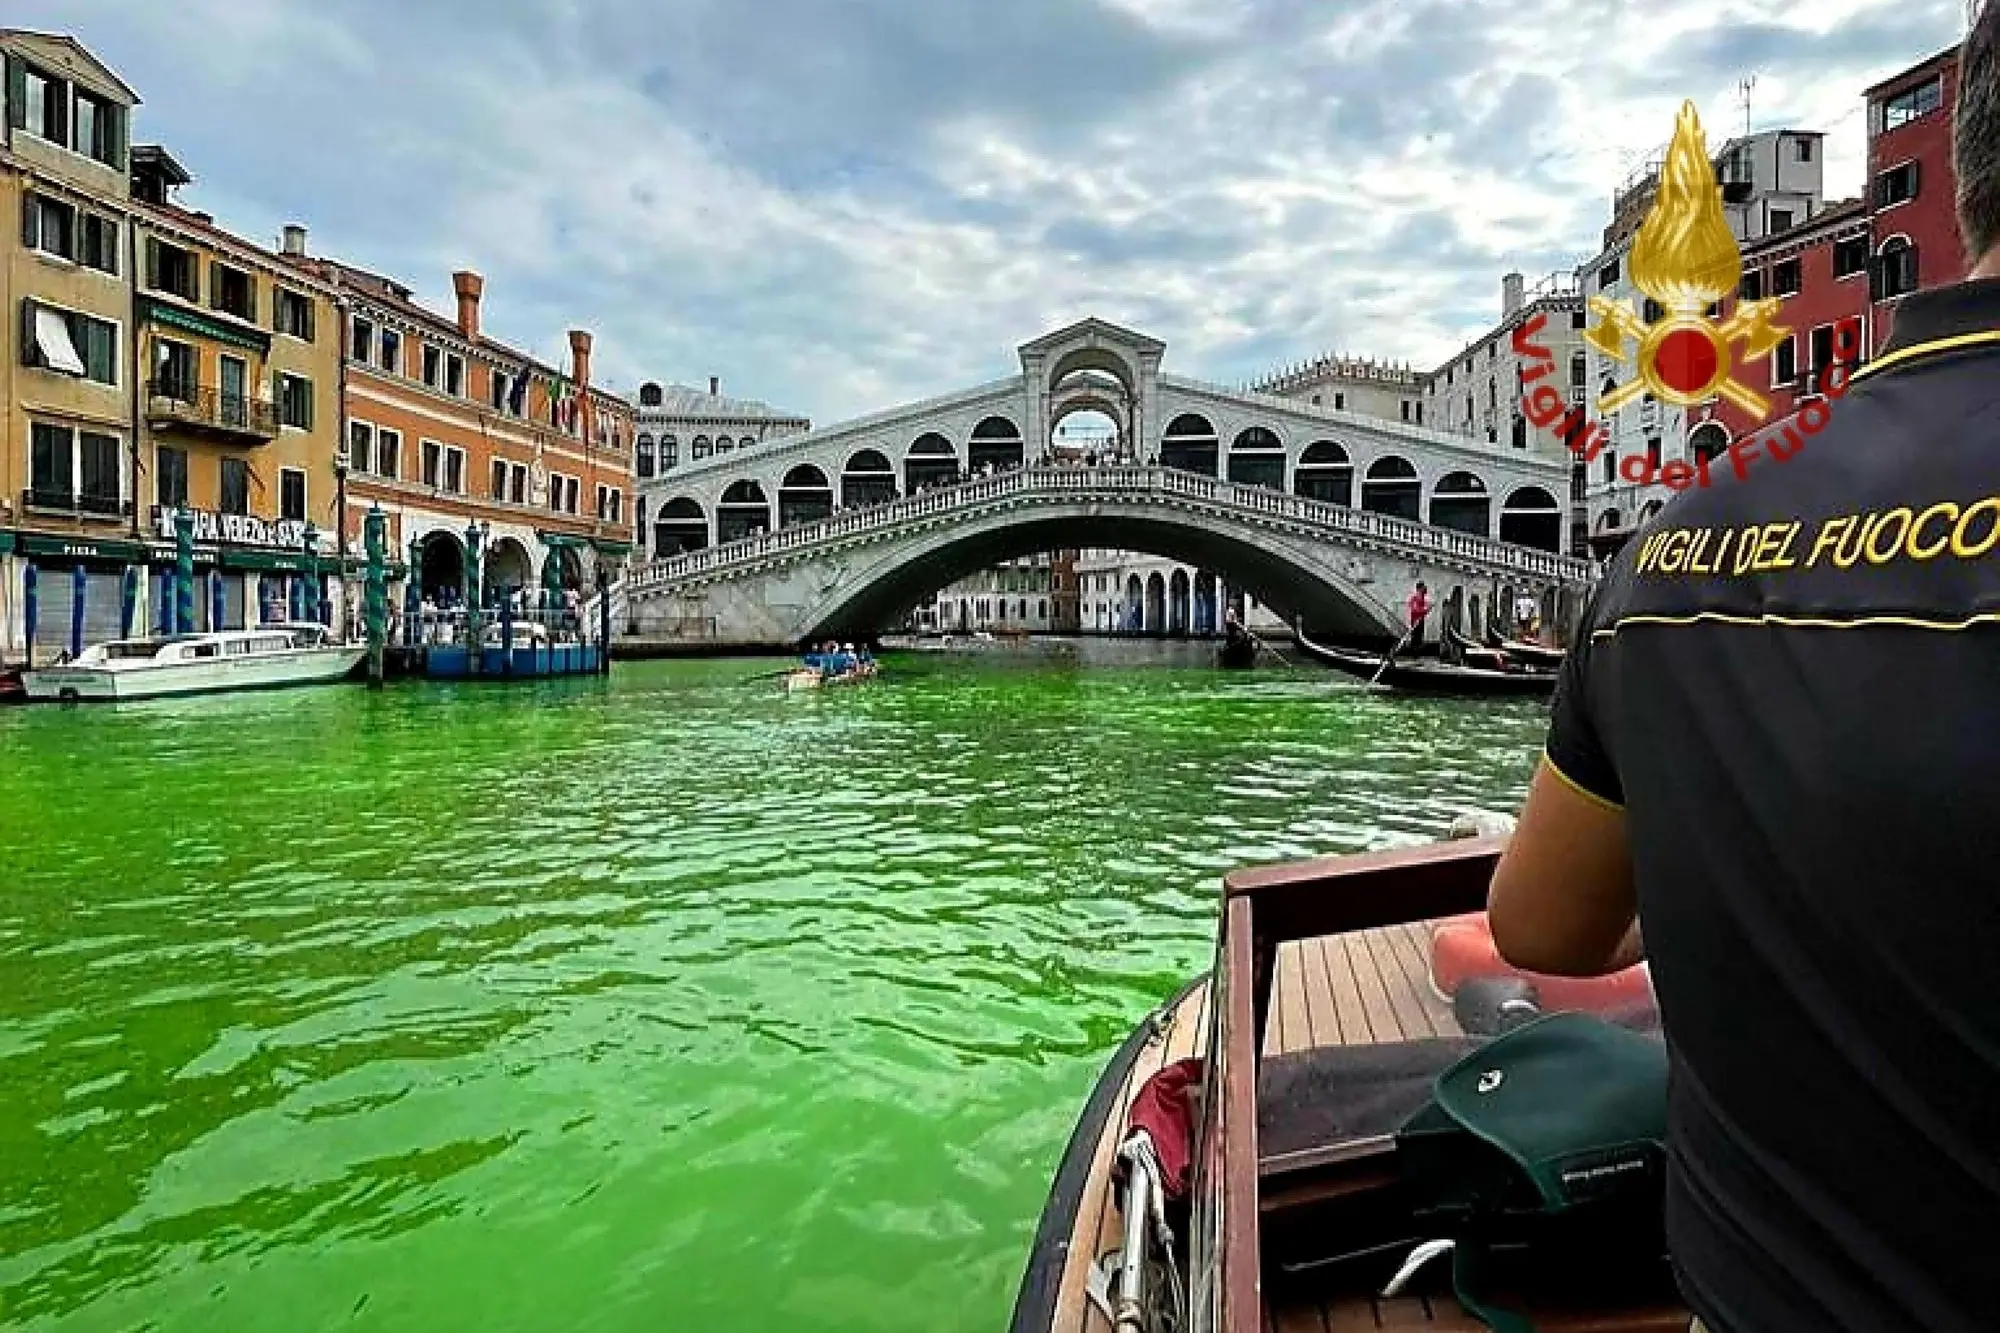 Una chiazza di liquido verde fosforescente è apparsa stamani sul Canal Grande all'altezza del Ponte di Rialto a Venezia (foto vigili del fuoco via Ansa)